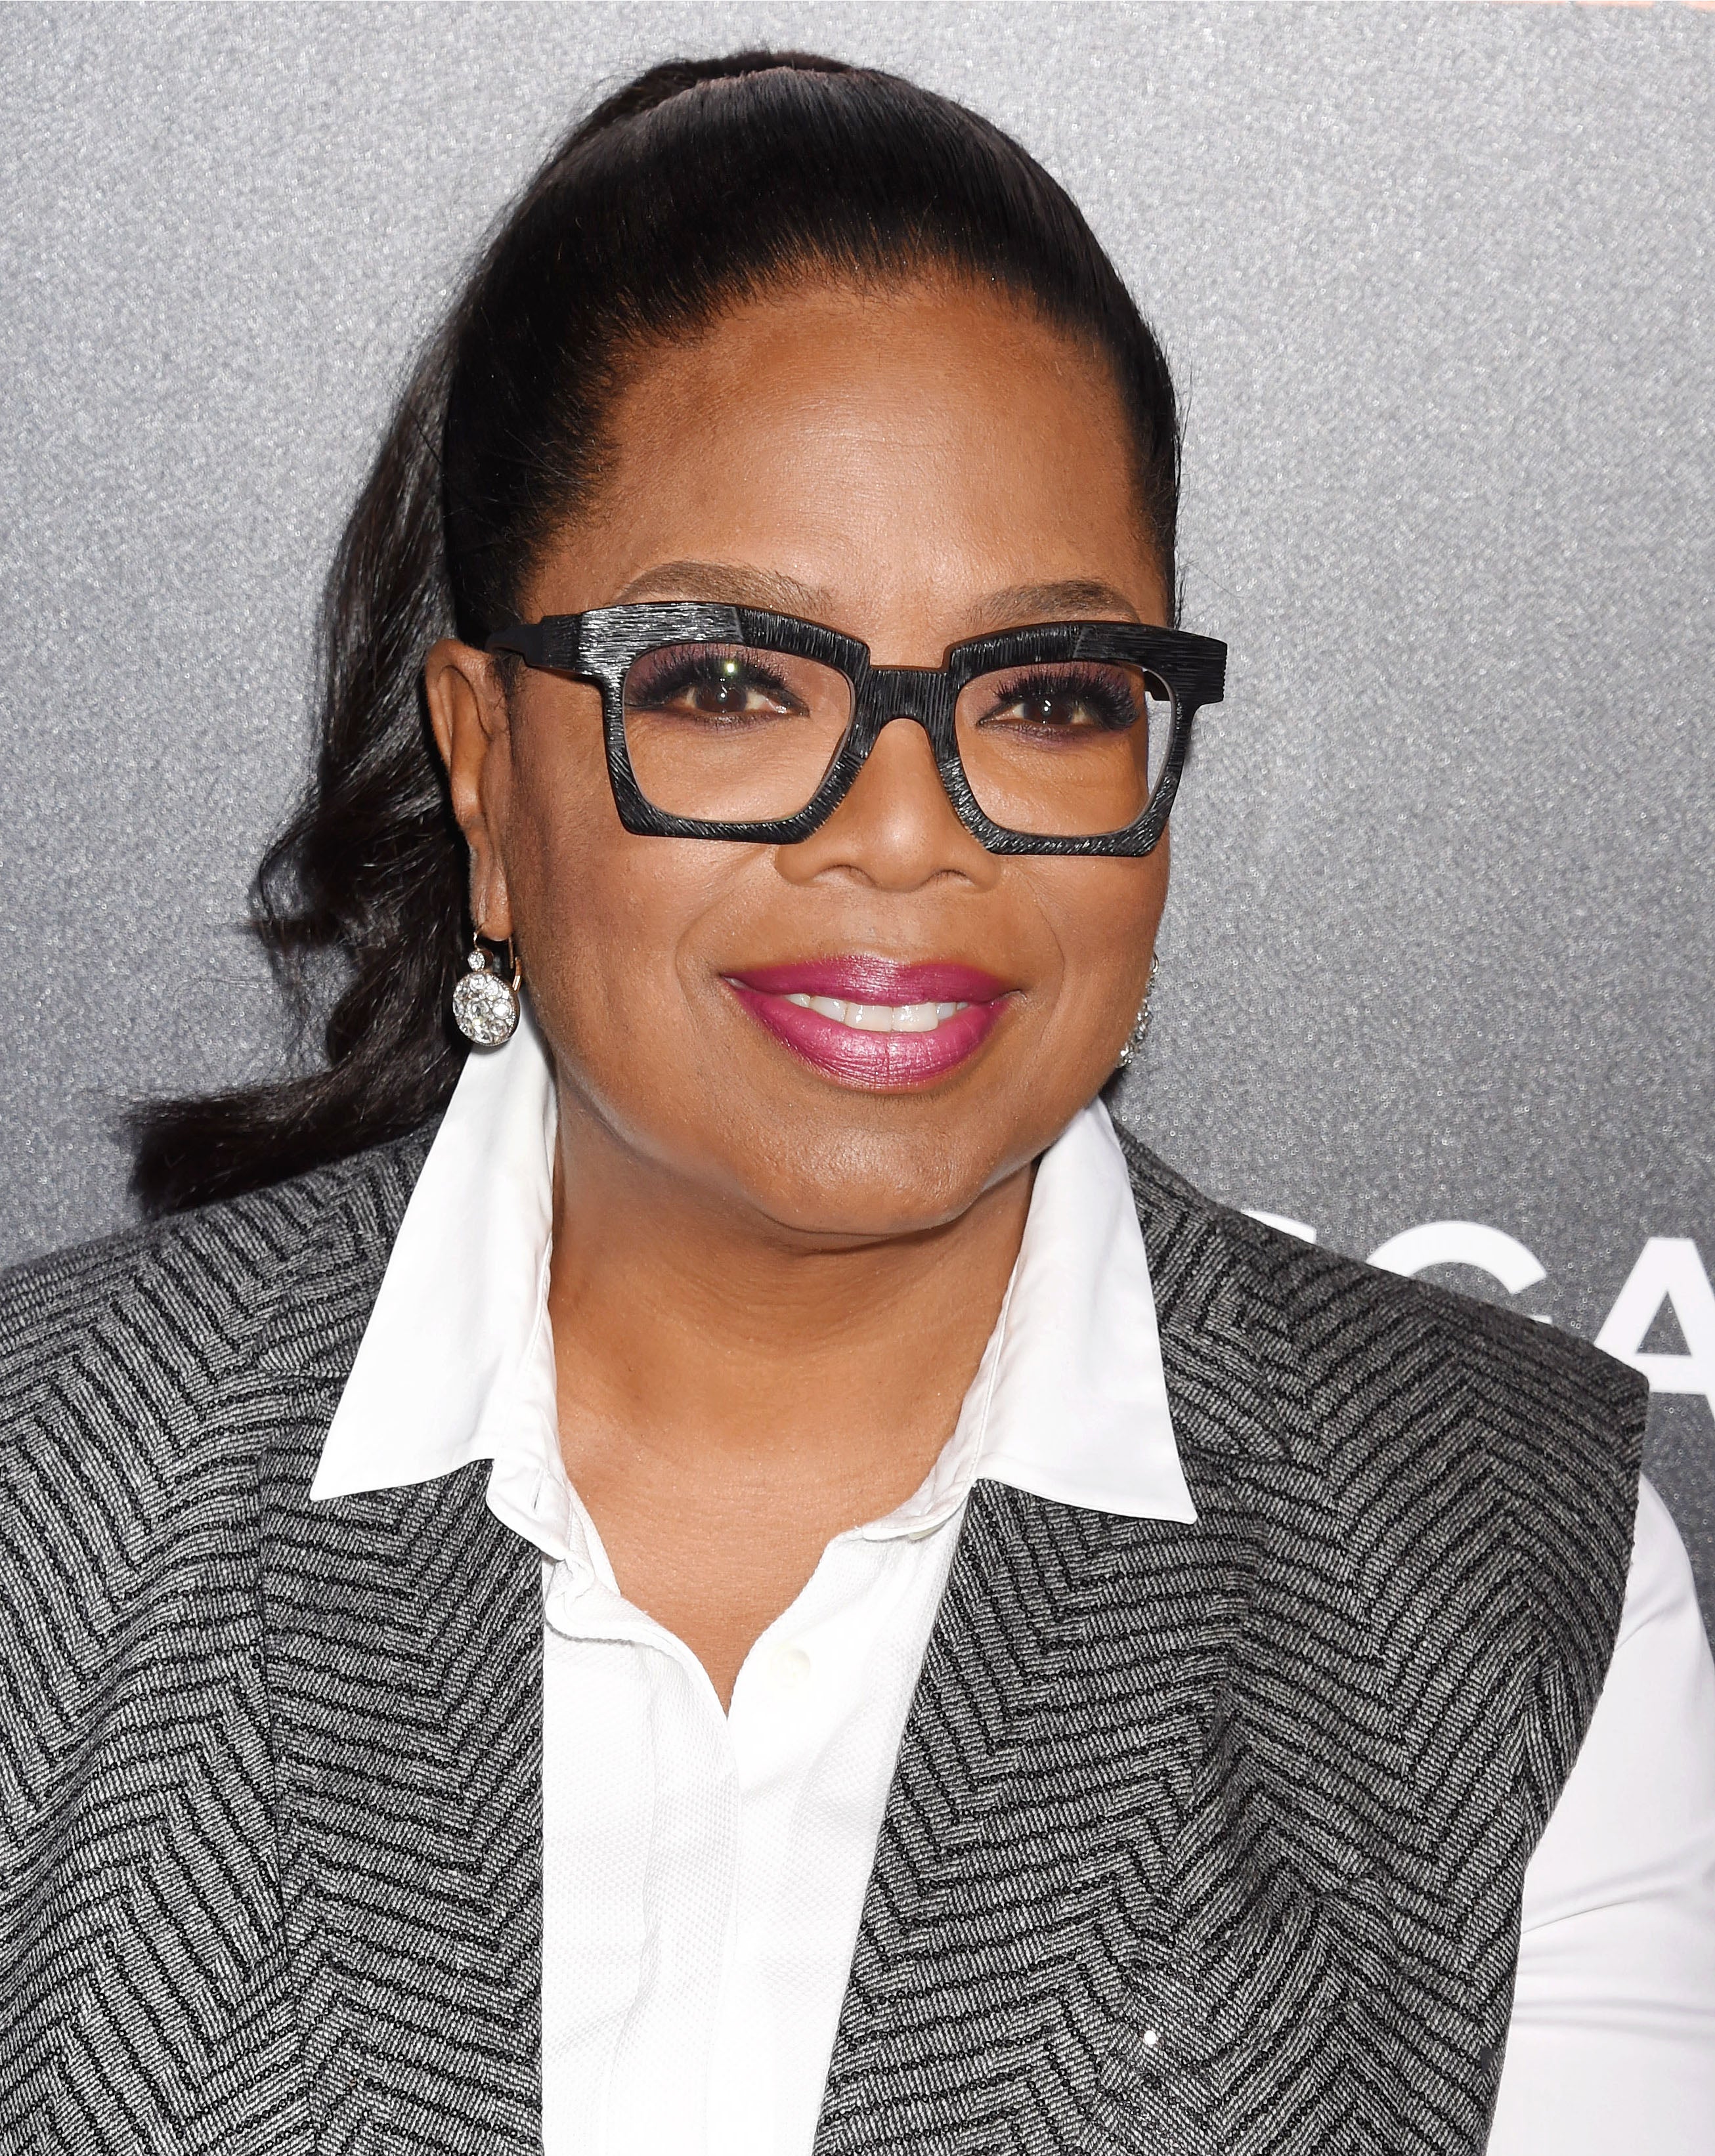 Oprah 2020? CNN Commentator Van Jones Is Here For It!
